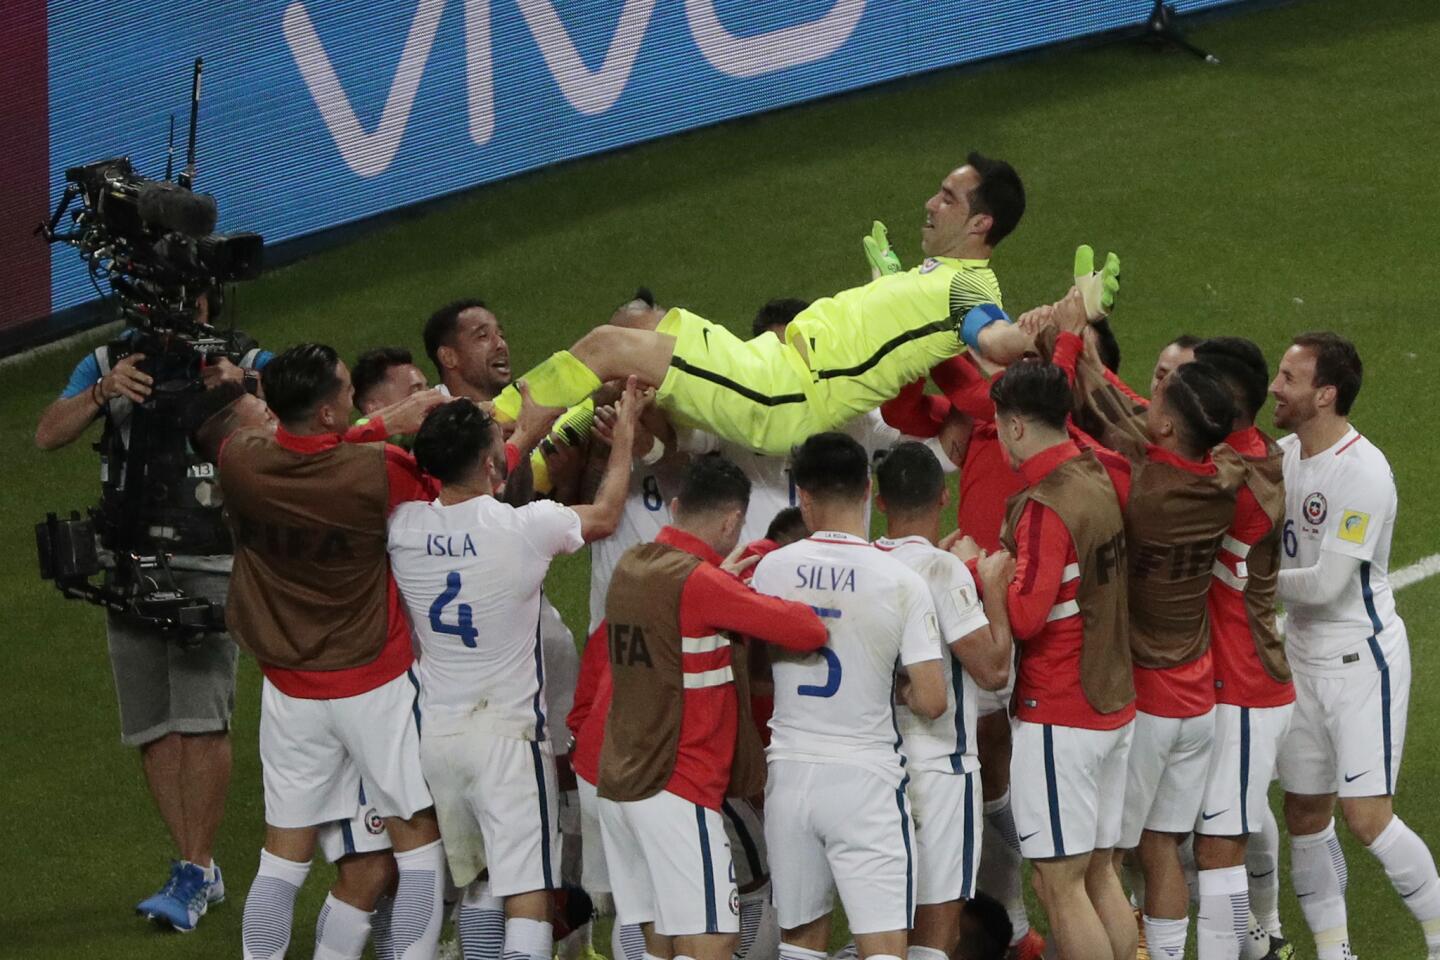 Portugal vs. Chile